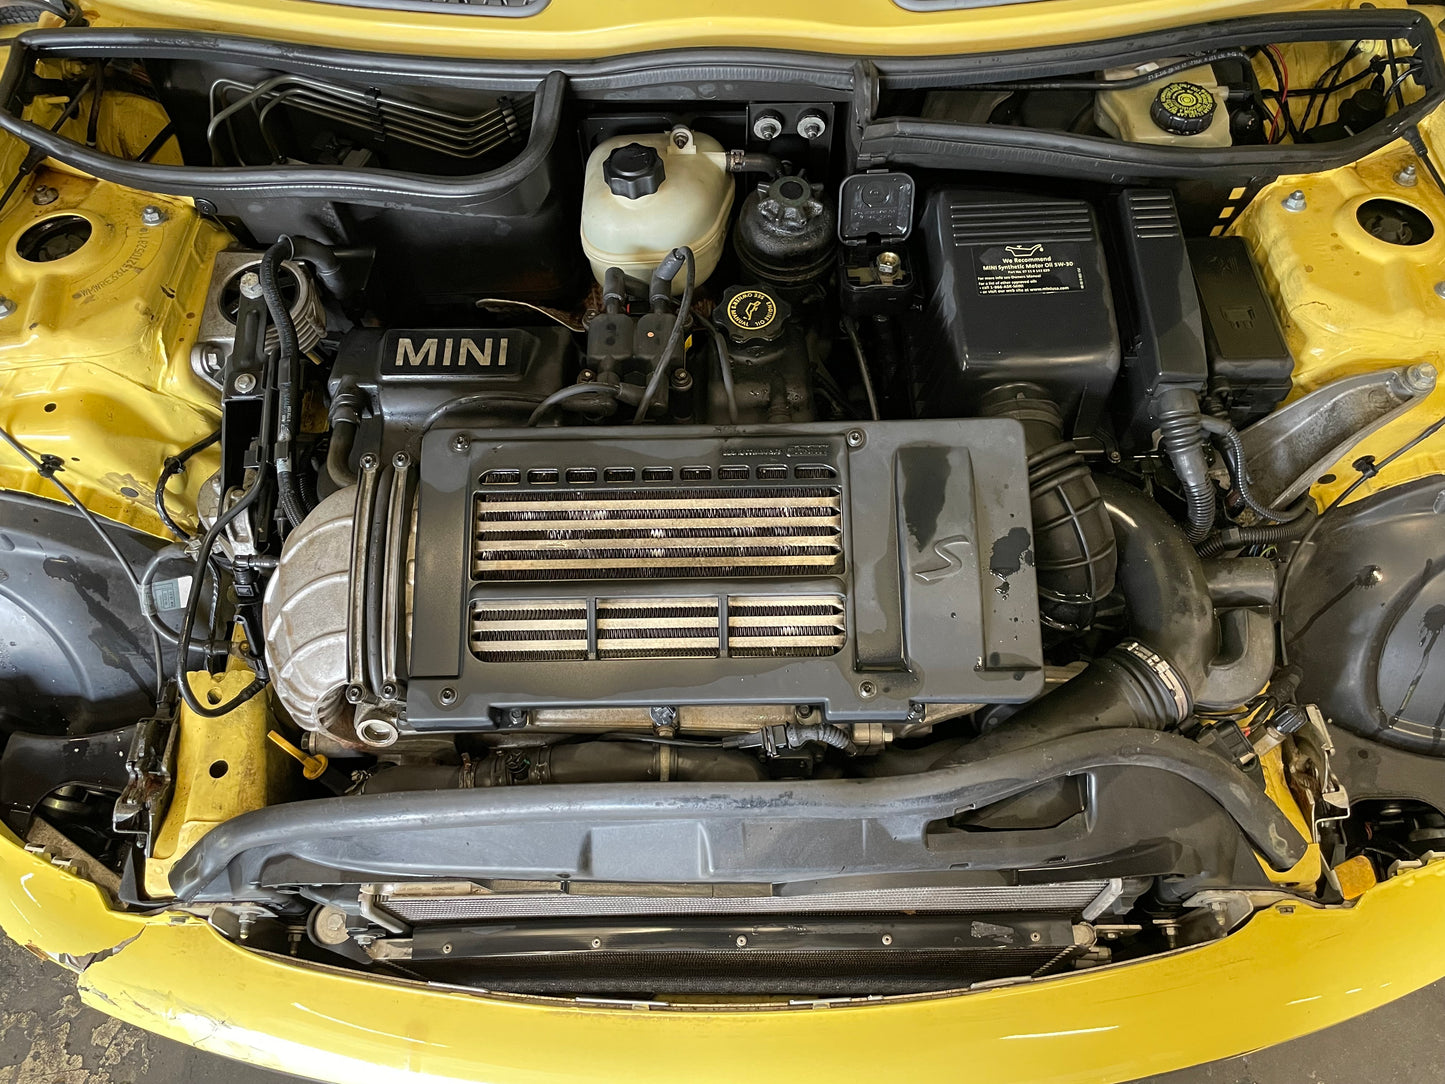 2002 MINI Cooper S, New Parts Car (July 2023) Stk #389